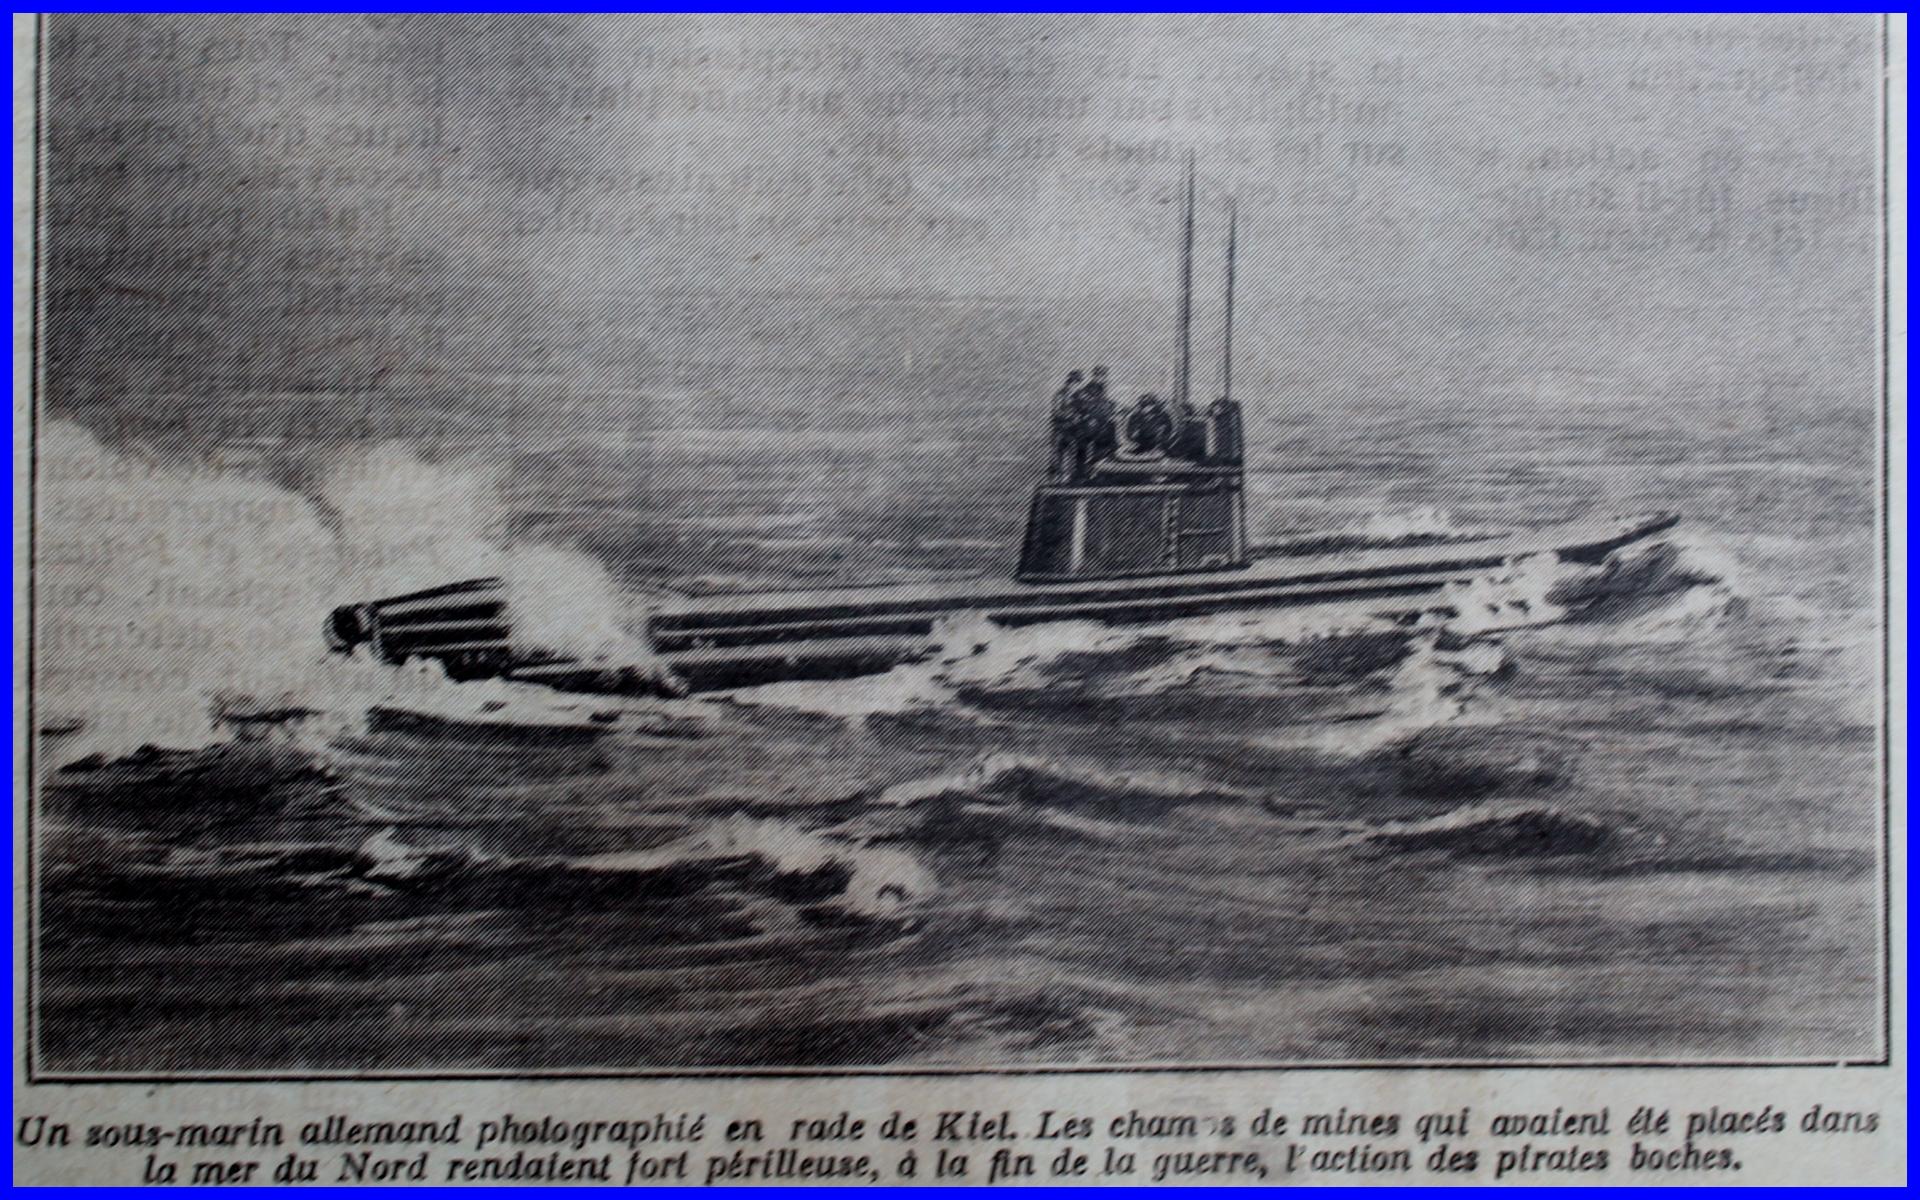 Calais 14 18 sous marin allemand parmi les champs de mines encadre